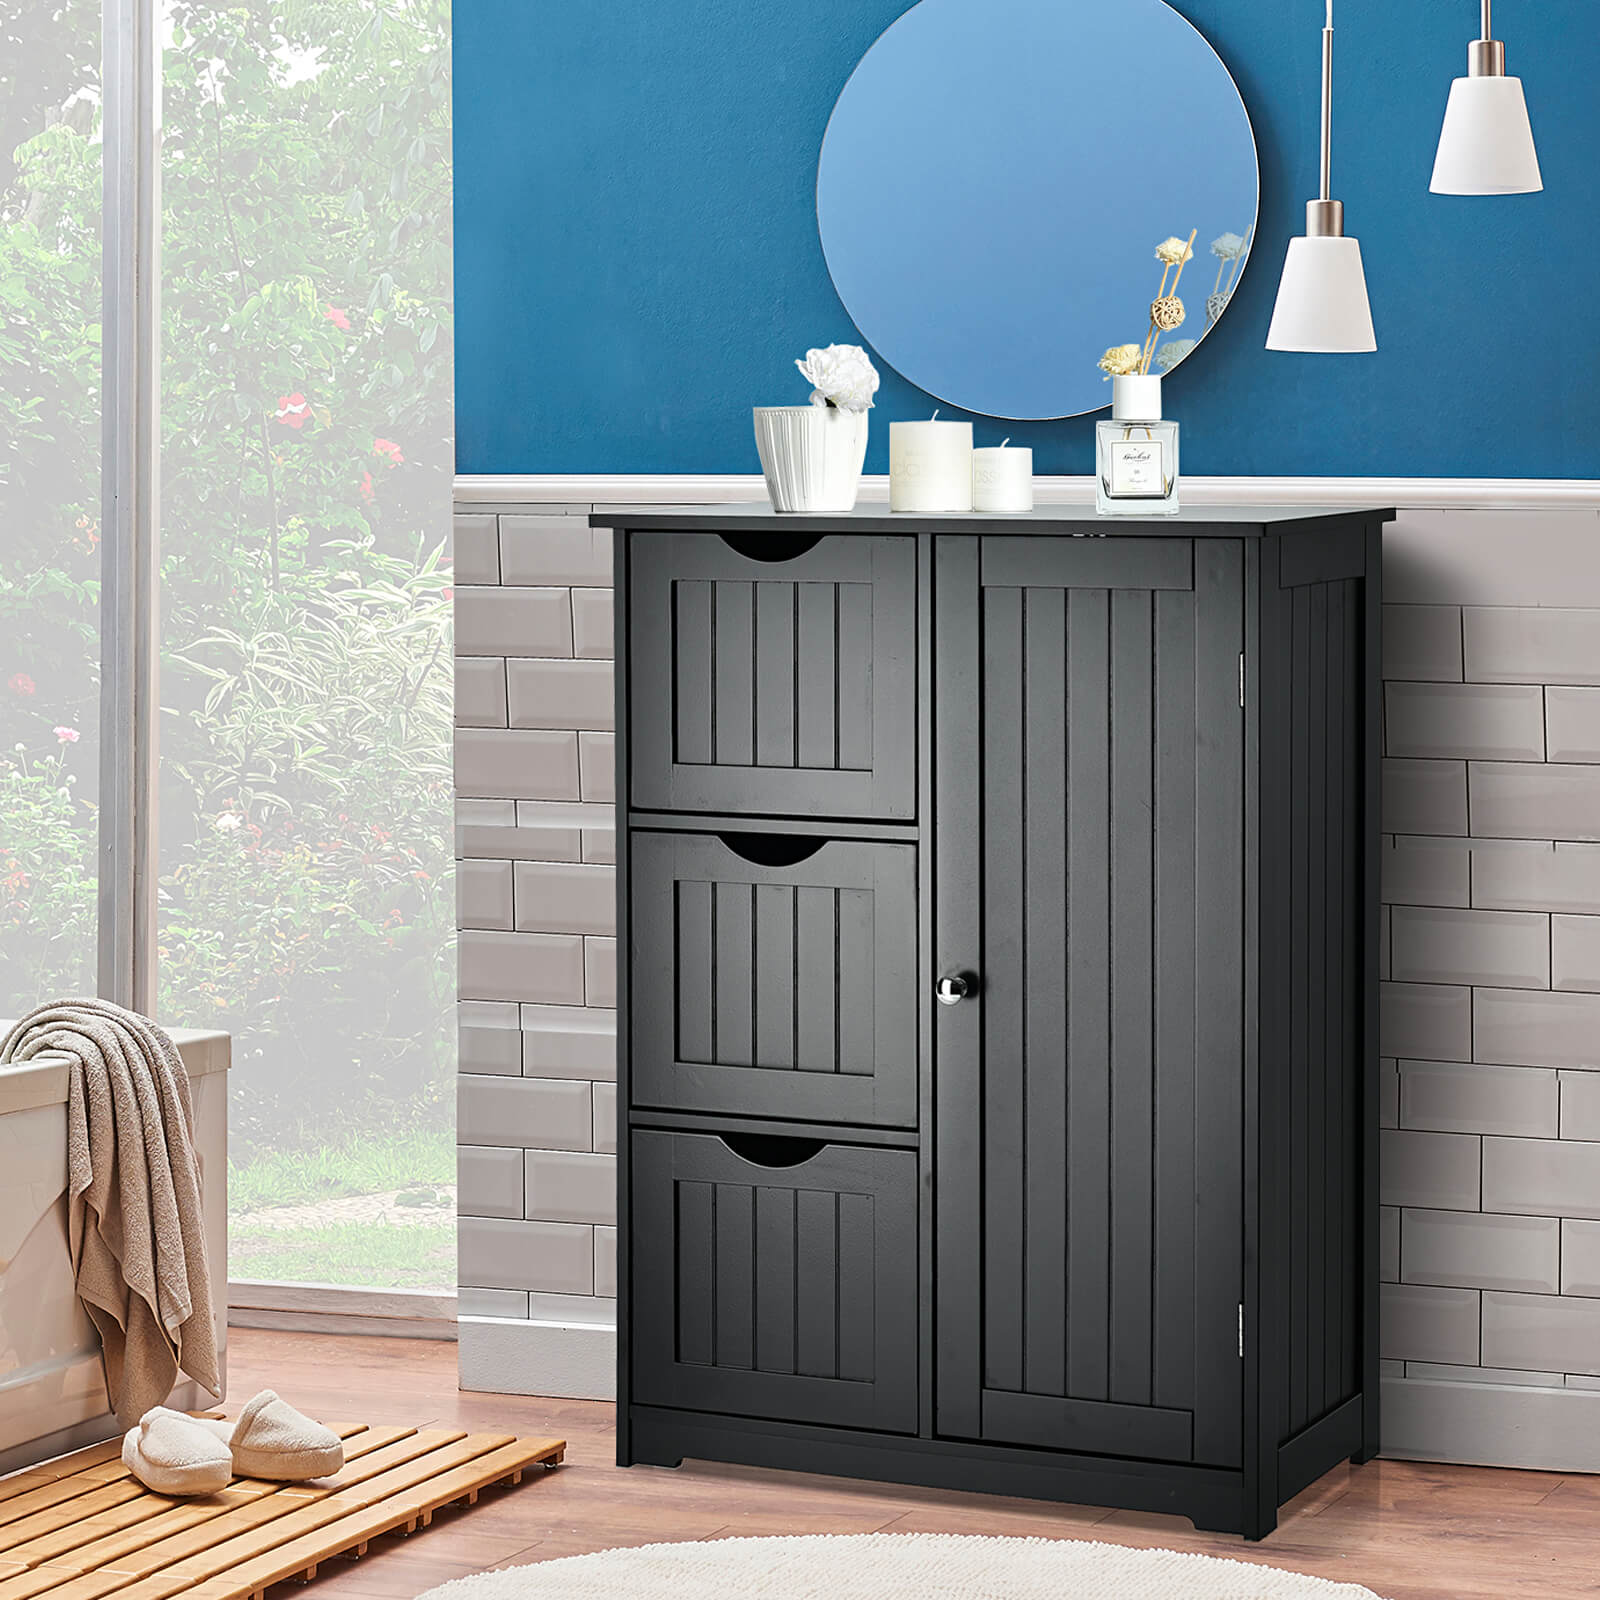 Black_1-Door_Freestanding_Bathroom_Cabinet-6.jpg